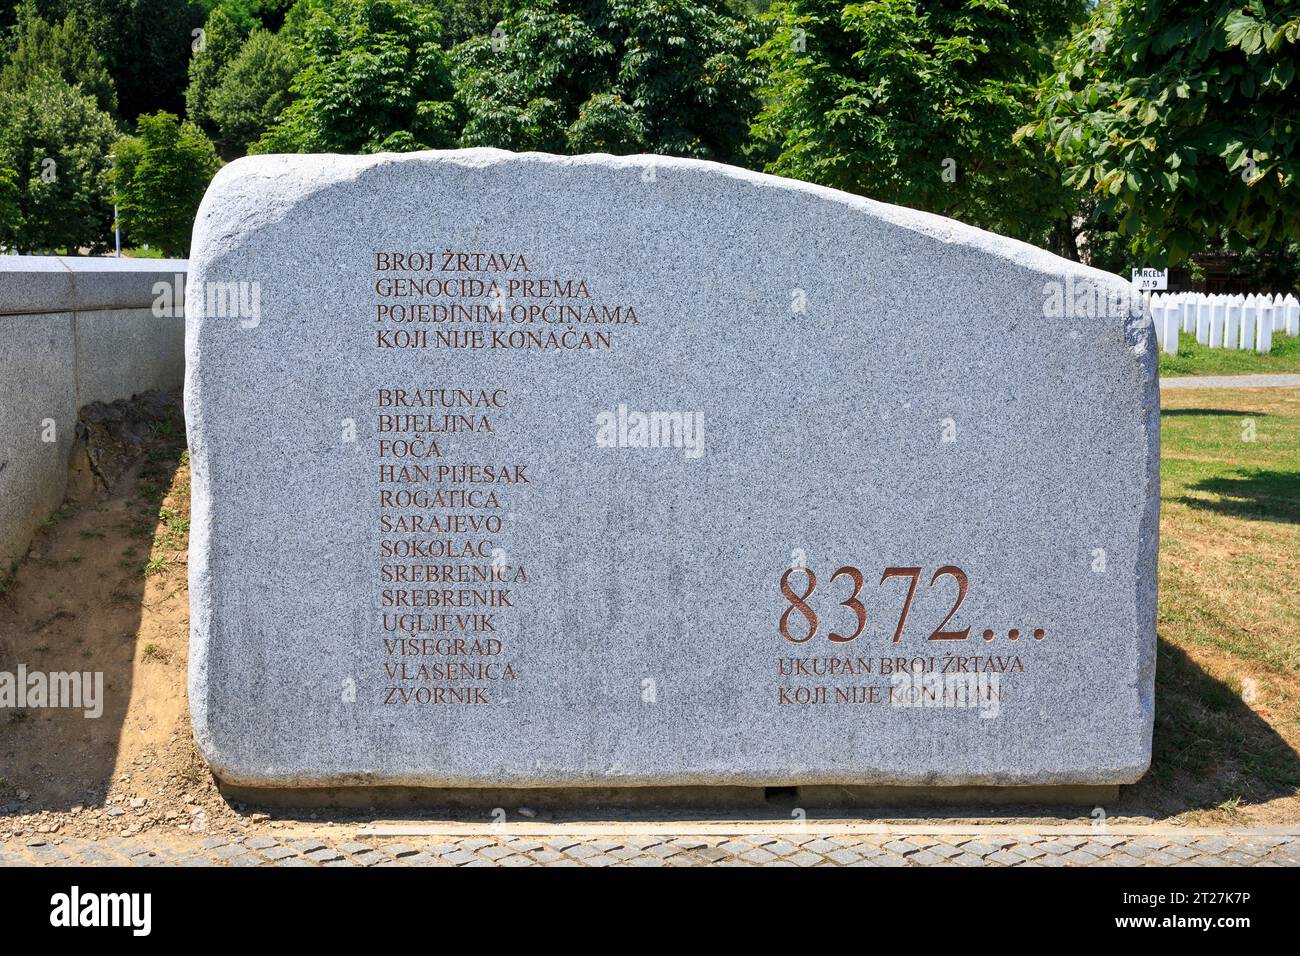 The Srebrenica Genocide Memorial Stone at Potocari, Bosnia and Herzegovina Stock Photo